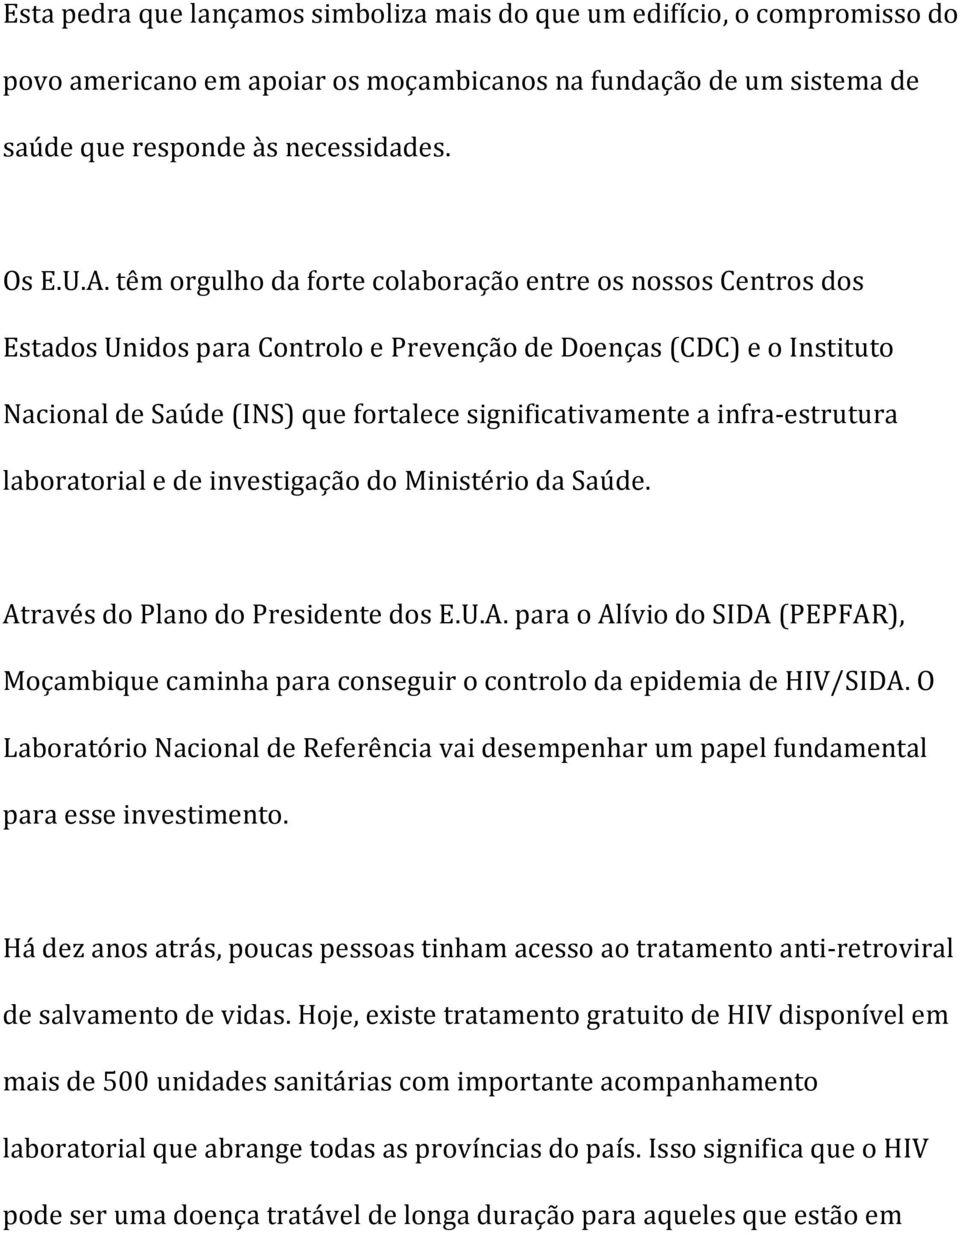 infra-estrutura laboratorial e de investigação do Ministério da Saúde. Através do Plano do Presidente dos E.U.A. para o Alívio do SIDA (PEPFAR), Moçambique caminha para conseguir o controlo da epidemia de HIV/SIDA.